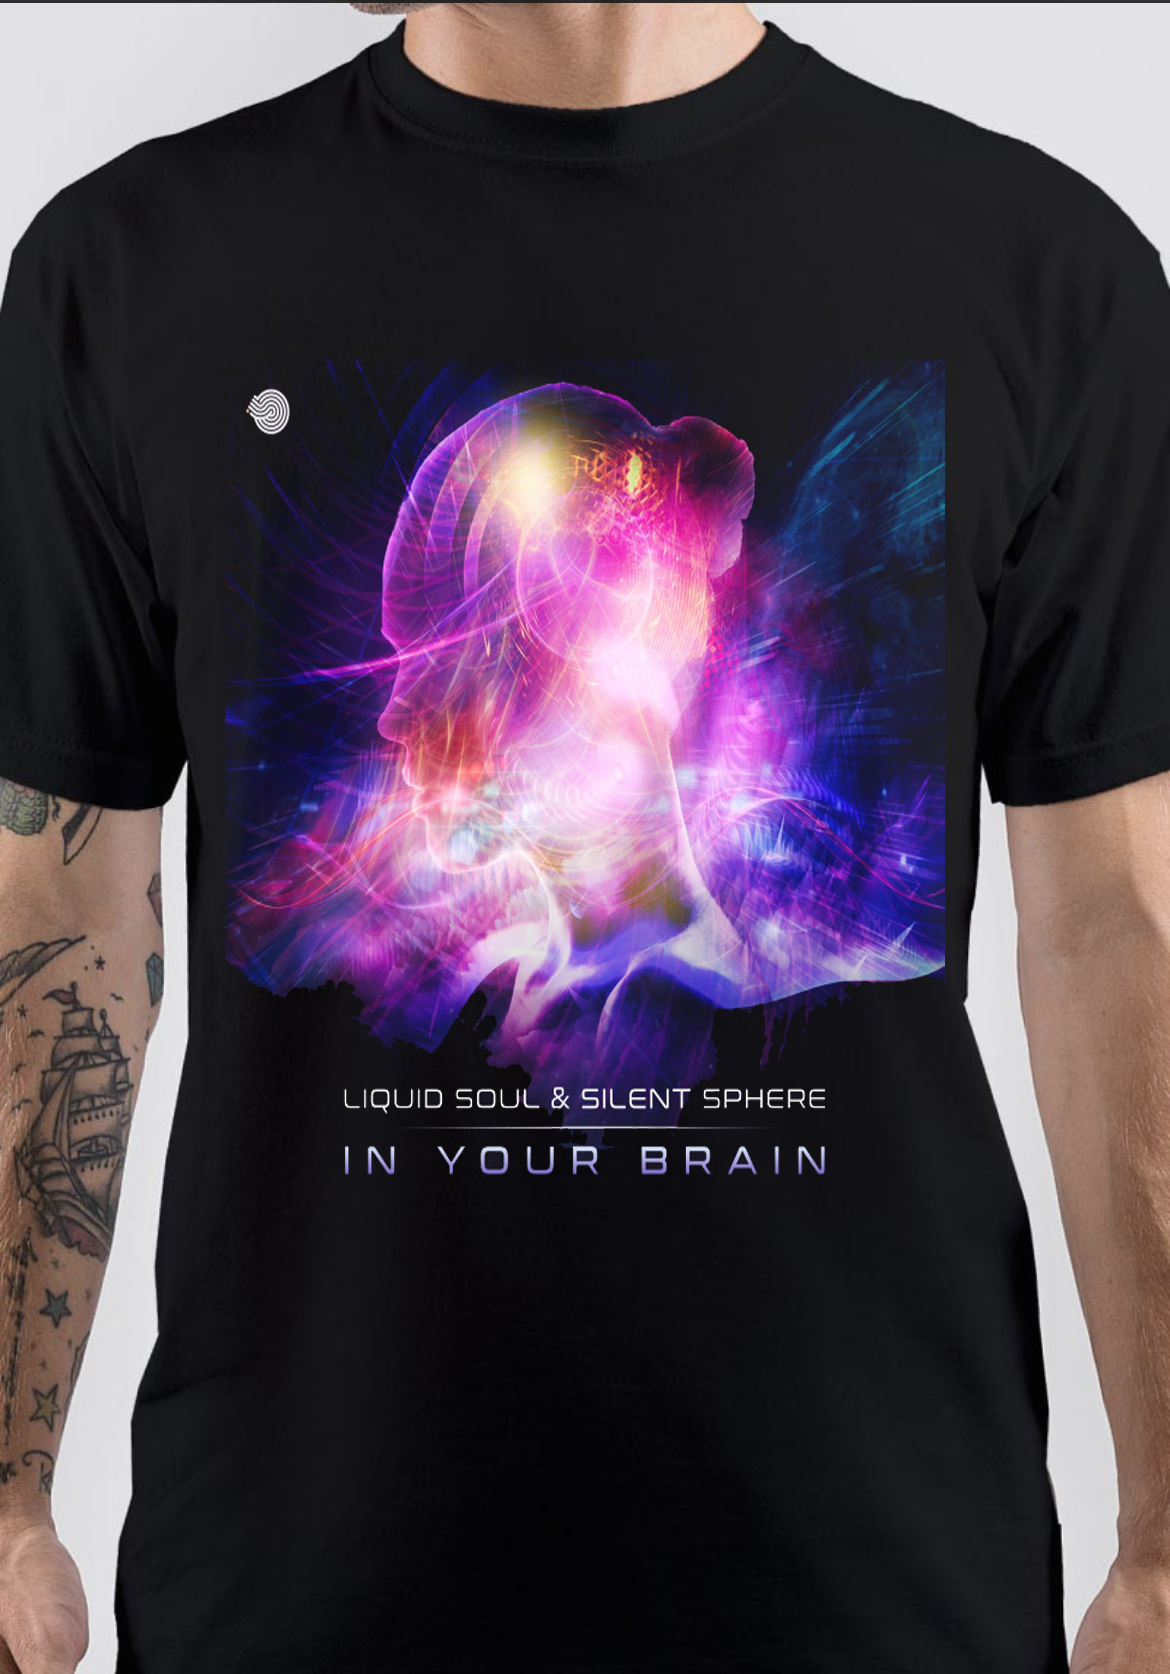 Liquid Soul T-Shirt And Merchandise